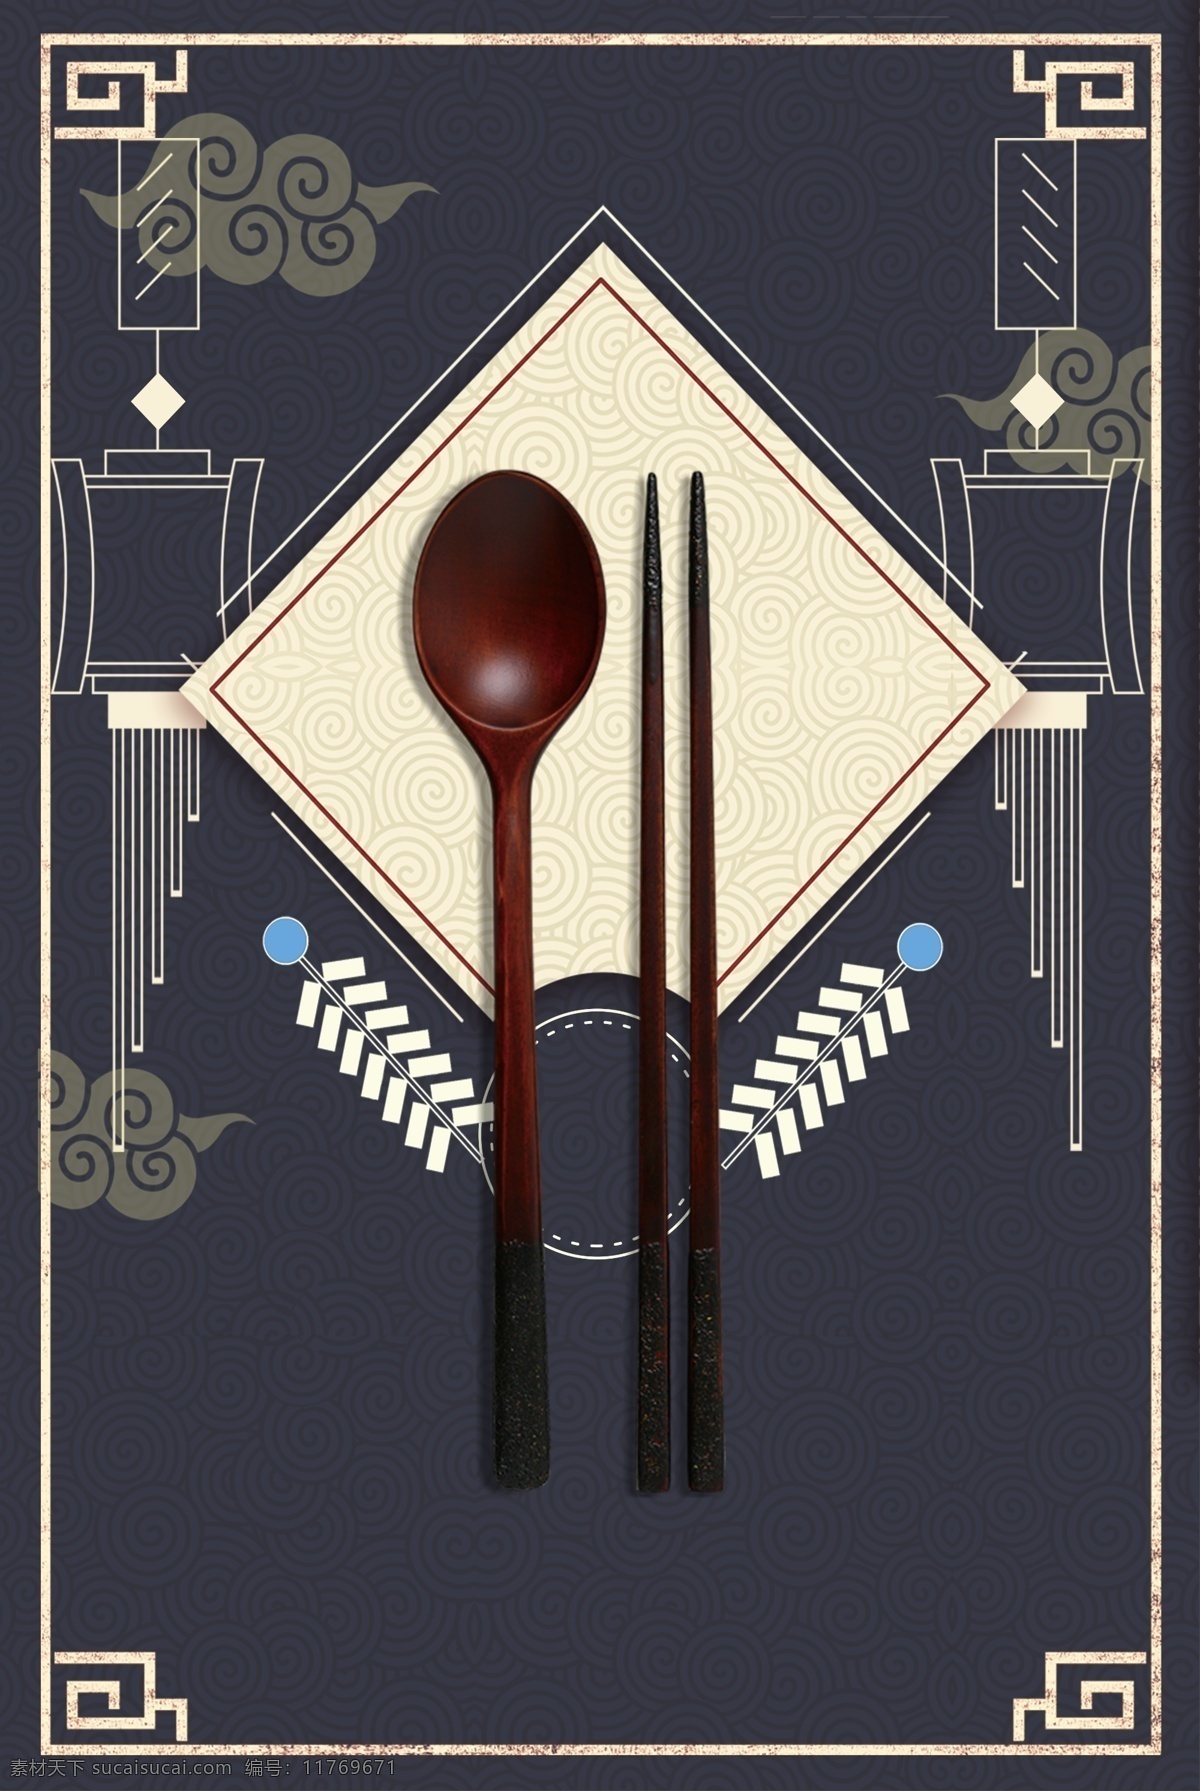 筷子 饮食文化 中国 风 复古 文艺 创意 意境 背景 中国传统文化 中国风 水墨风格 创意意境背景